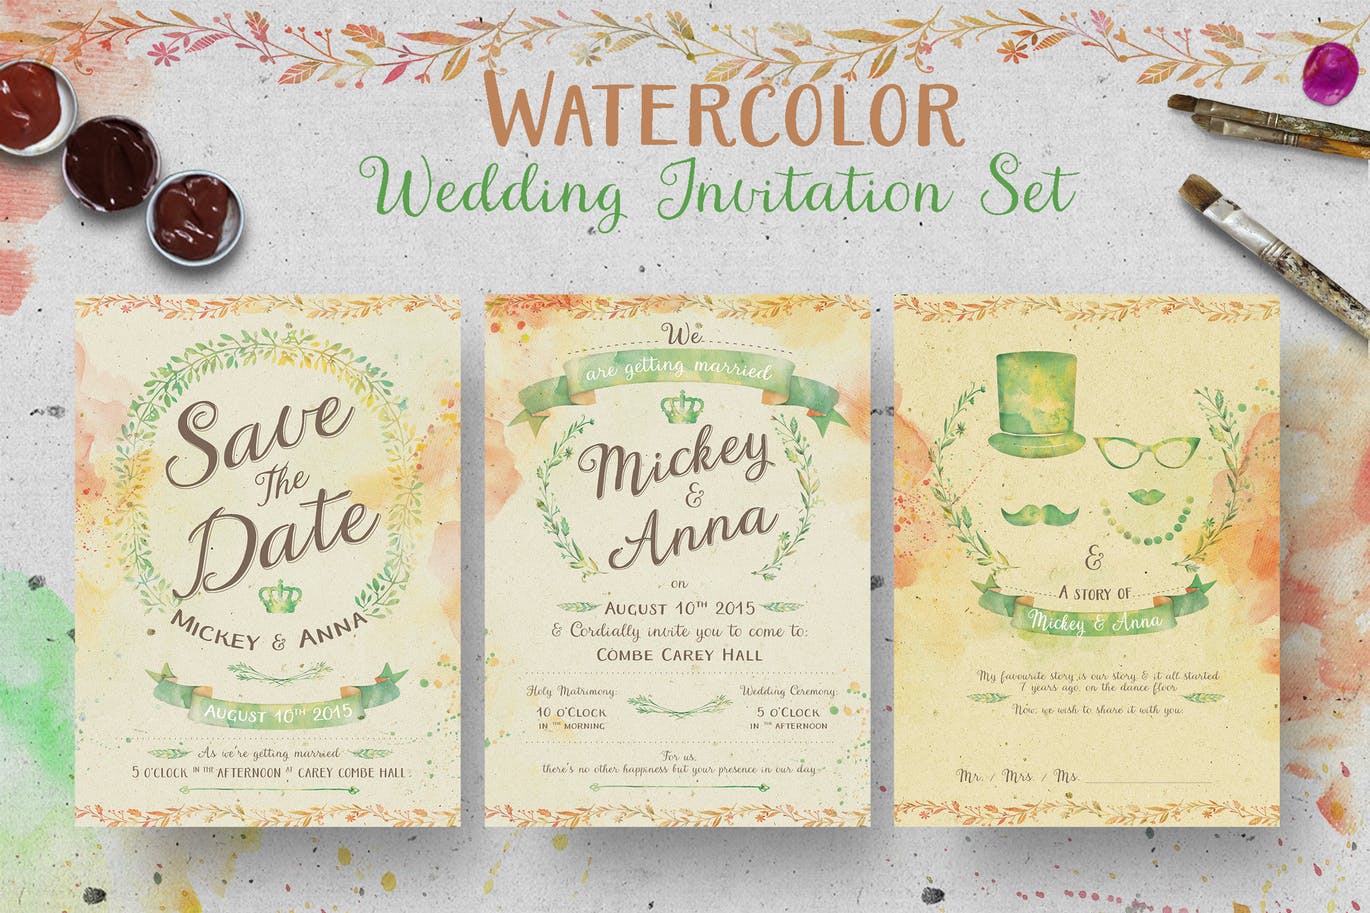 高品质的手绘水墨水彩风格婚礼植物邀请函设计模板插图